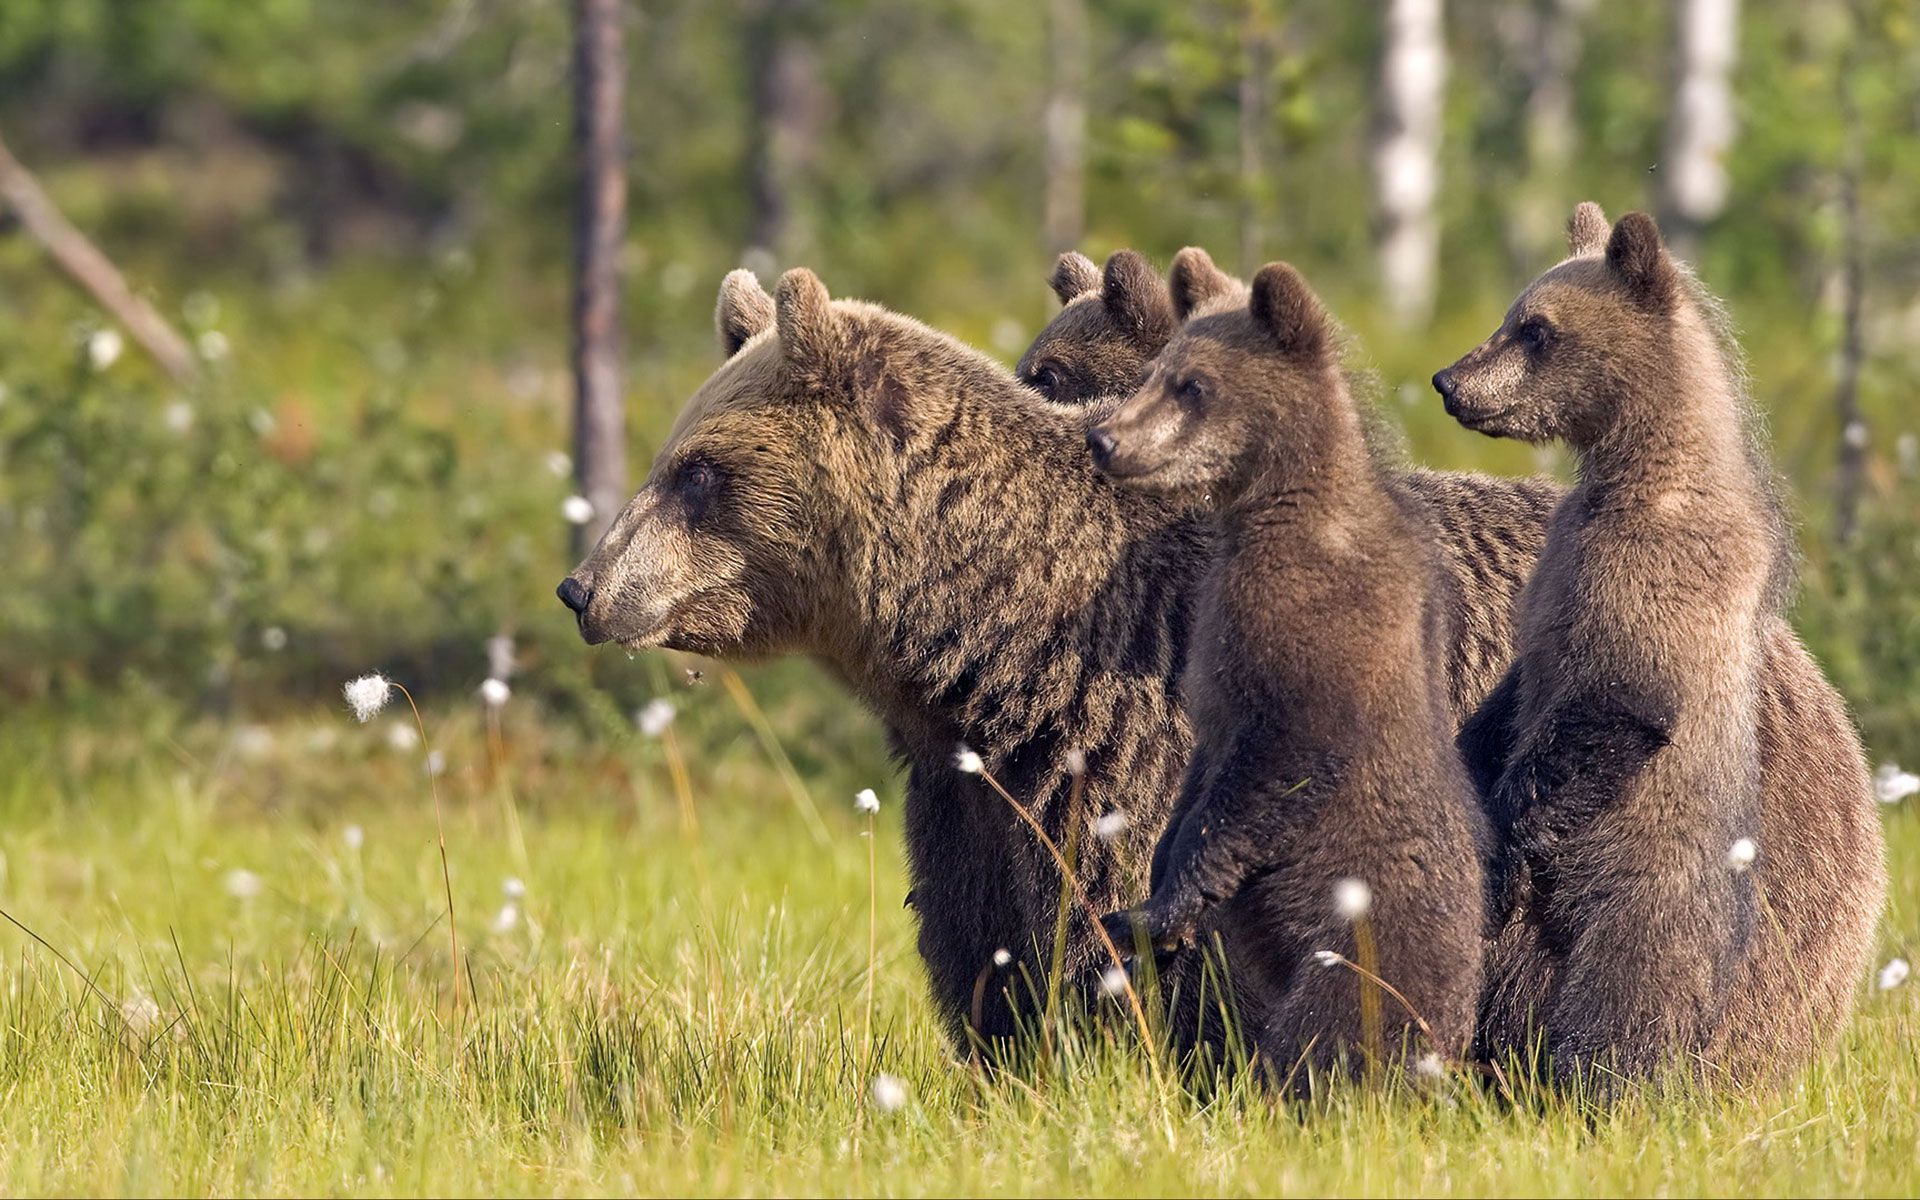 동물 벽지 hd 무료 다운로드,갈색 곰,회색 곰,야생 동물,지상파 동물,곰